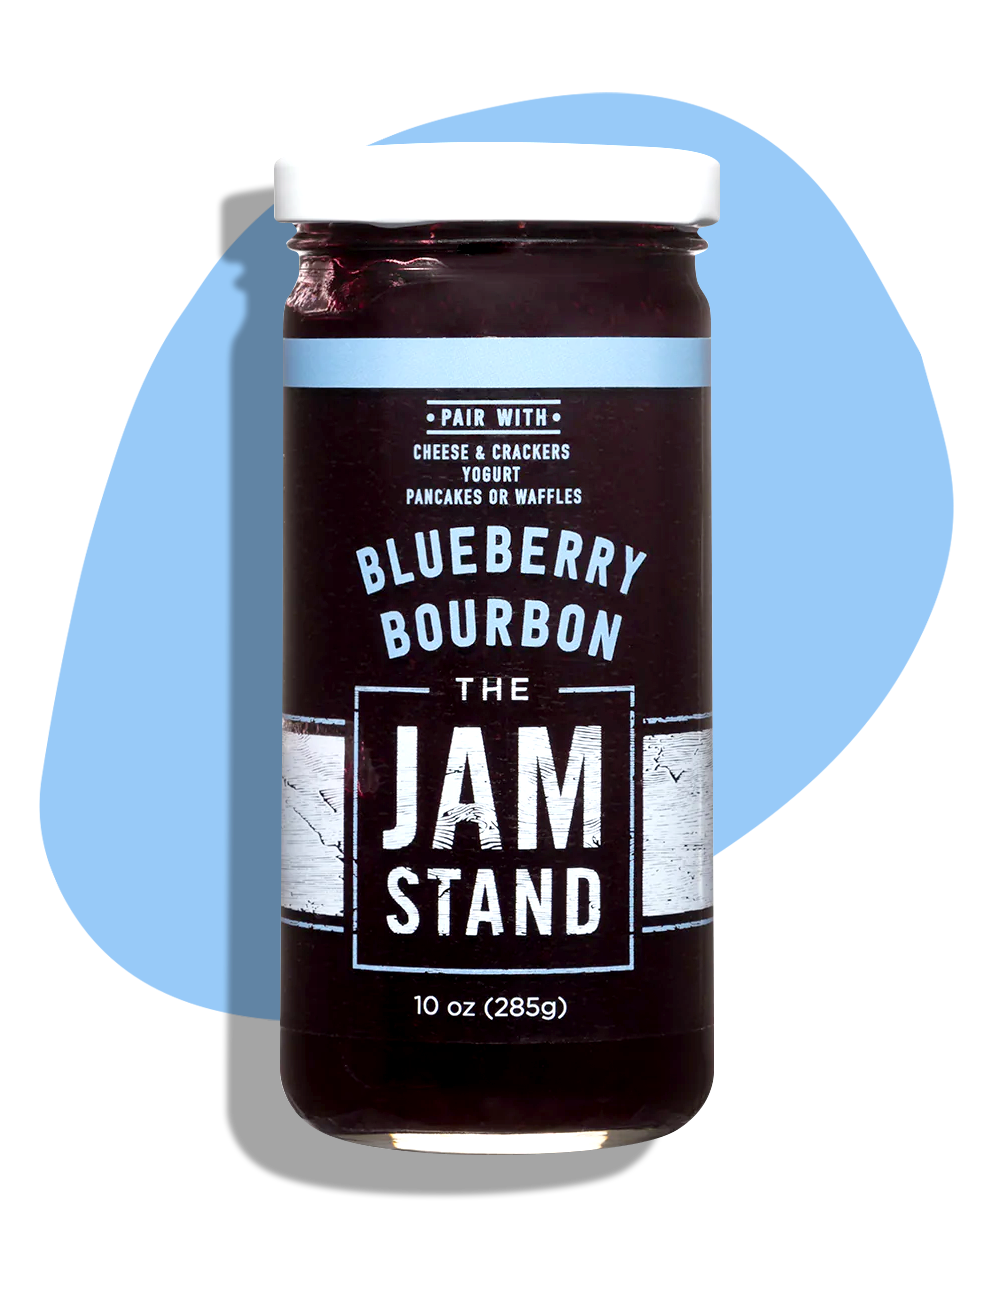 The Jam Stand: Blueberry Bourbon Jam